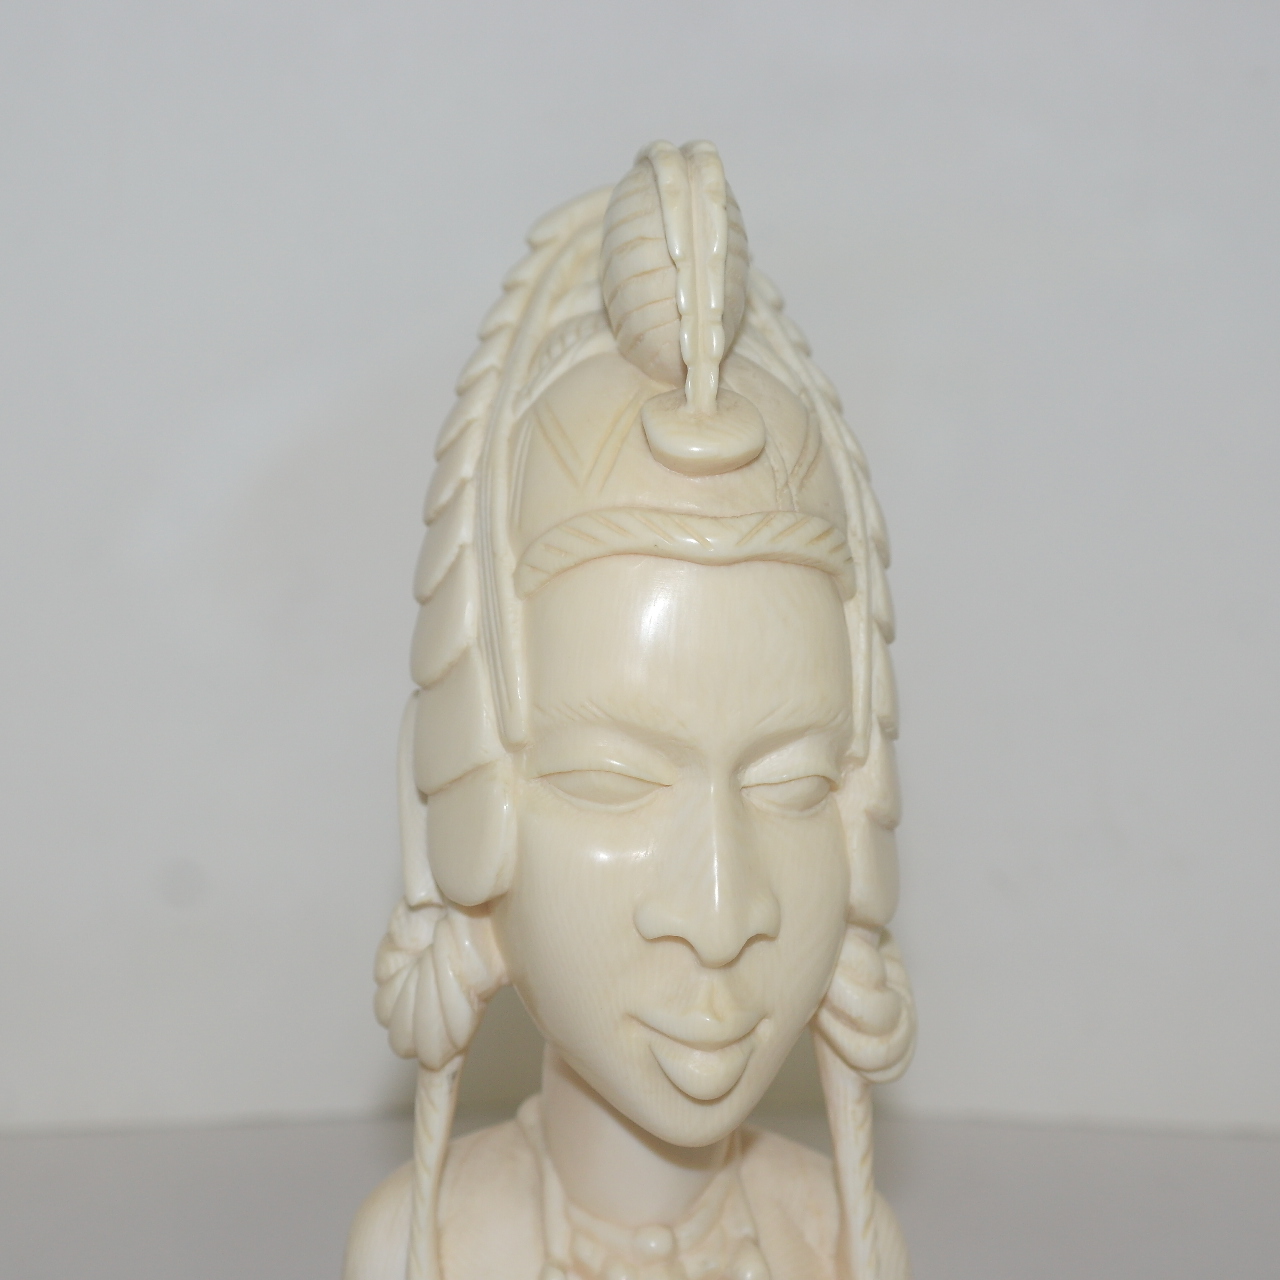 상아로된 아프라카여인 조각상